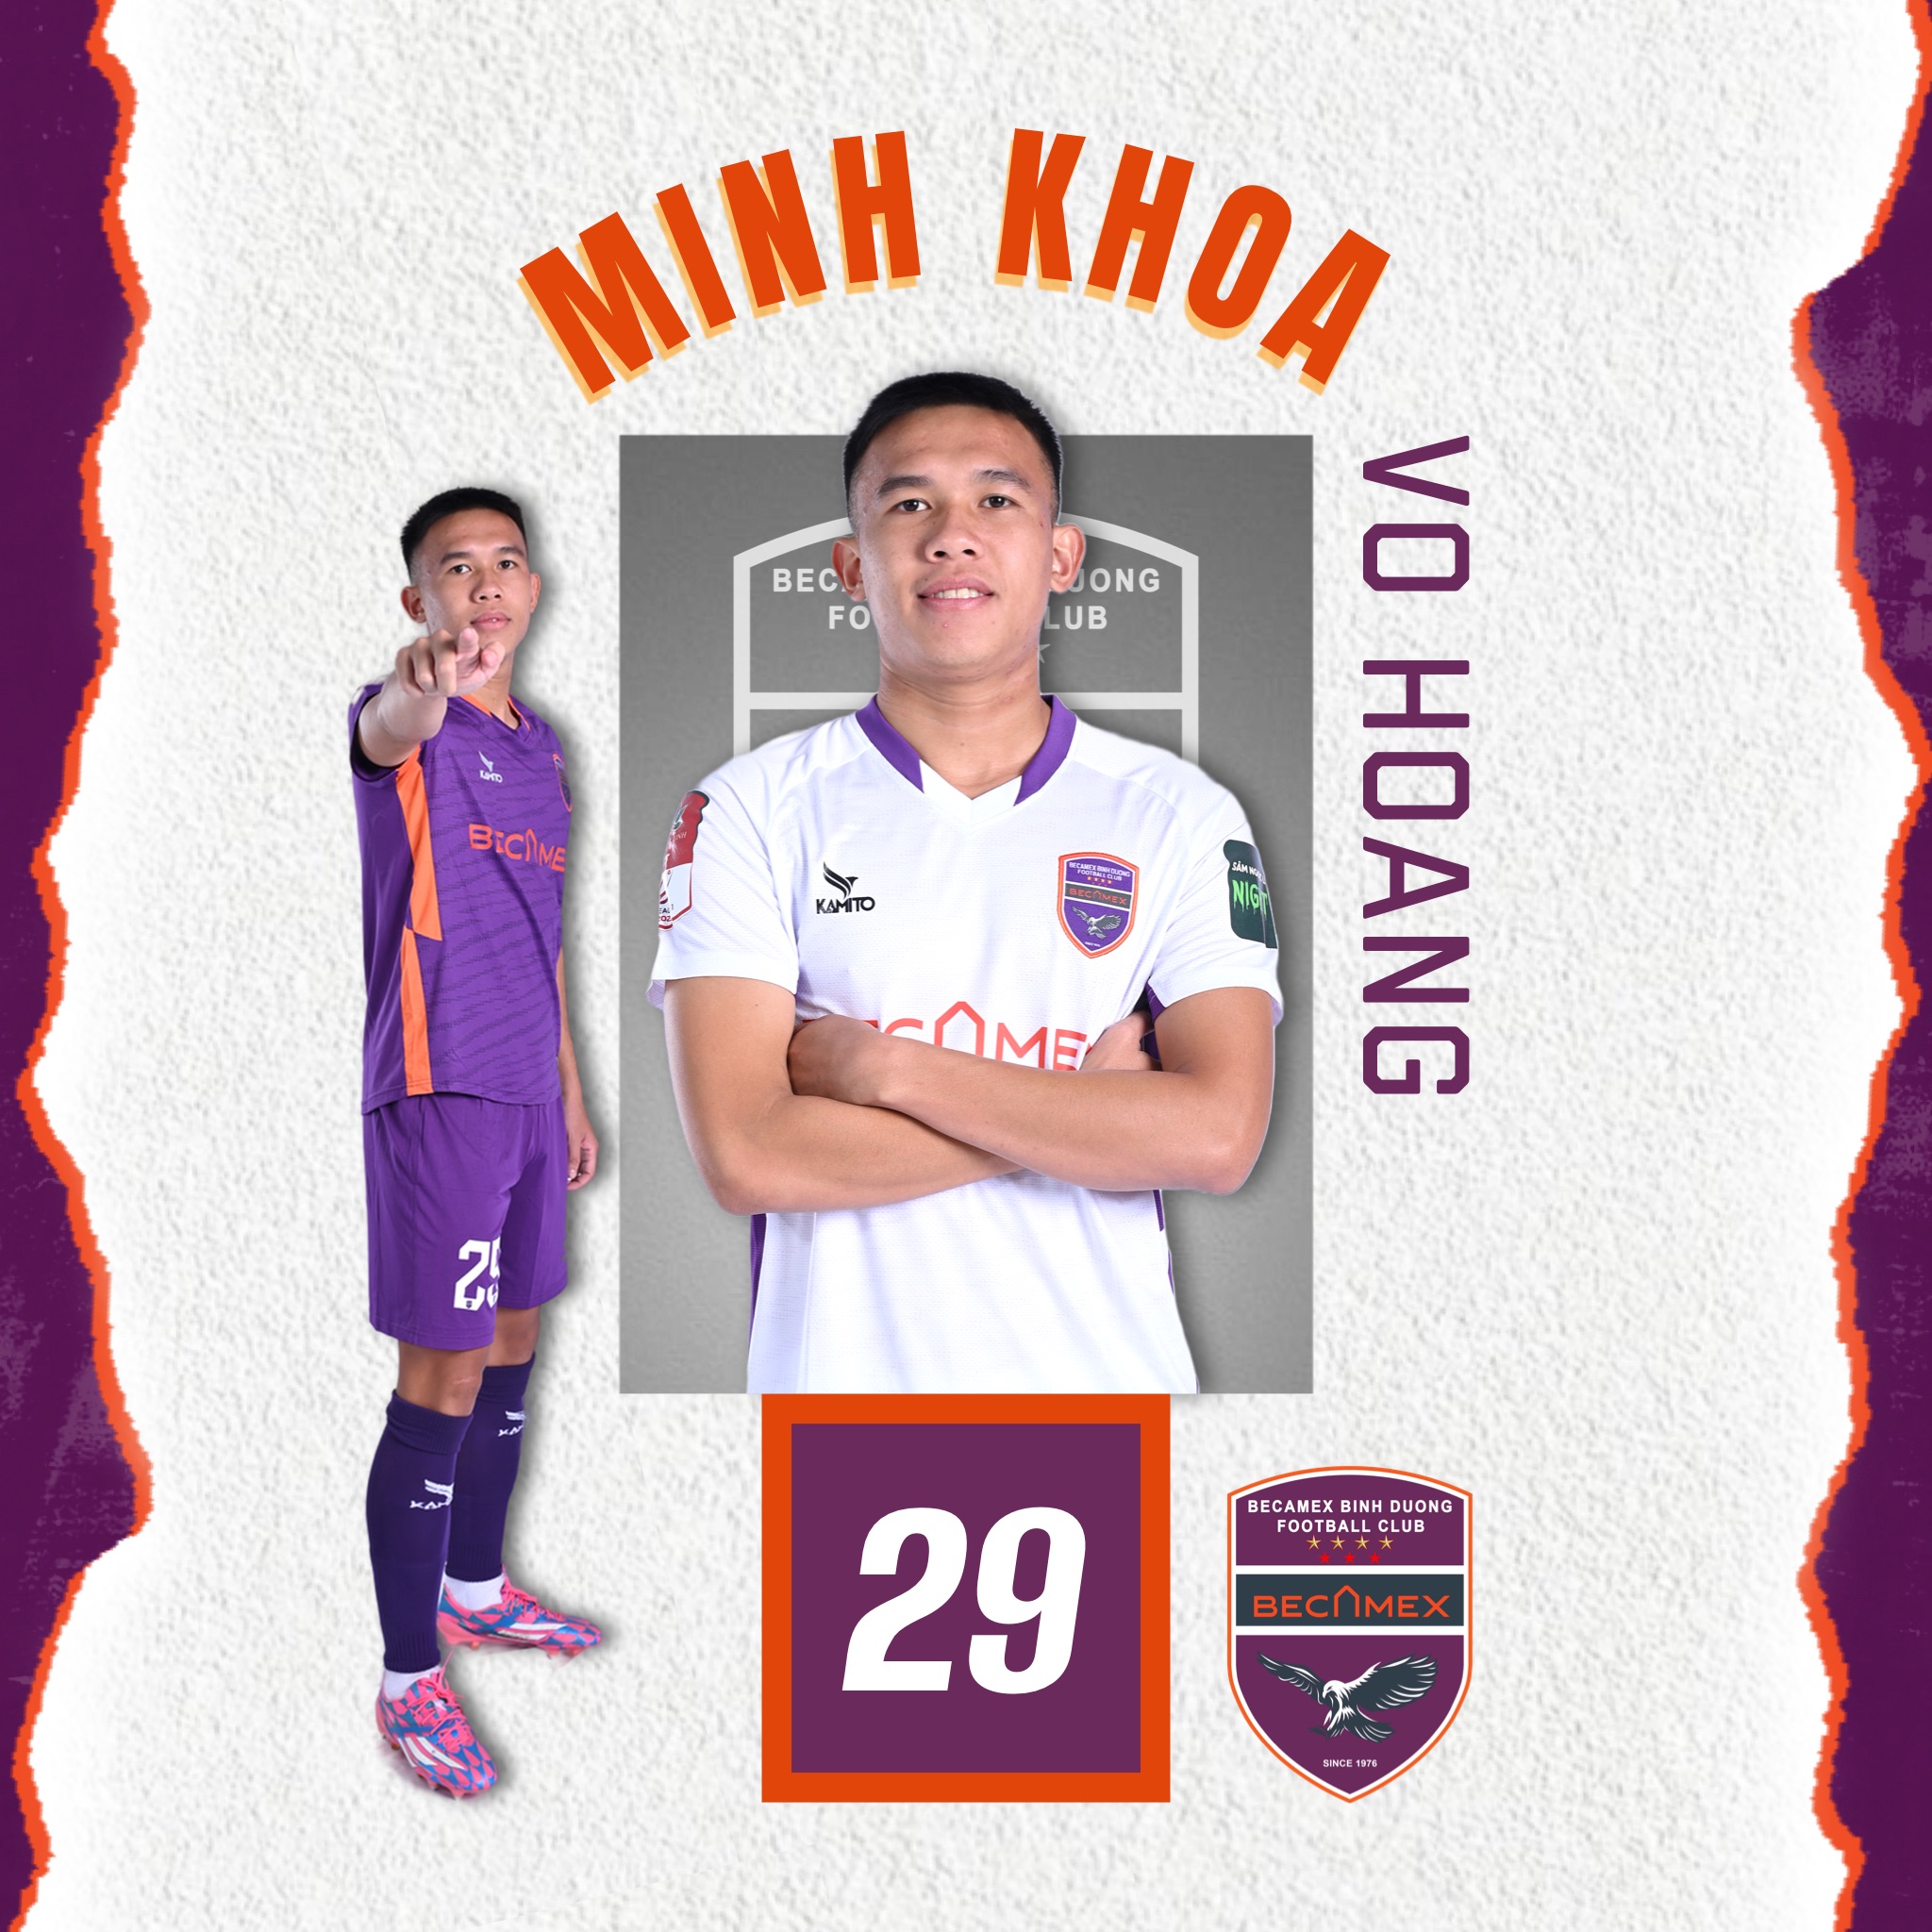 Võ Hoàng Minh Khoa - Becamex Binh Duong Football Club